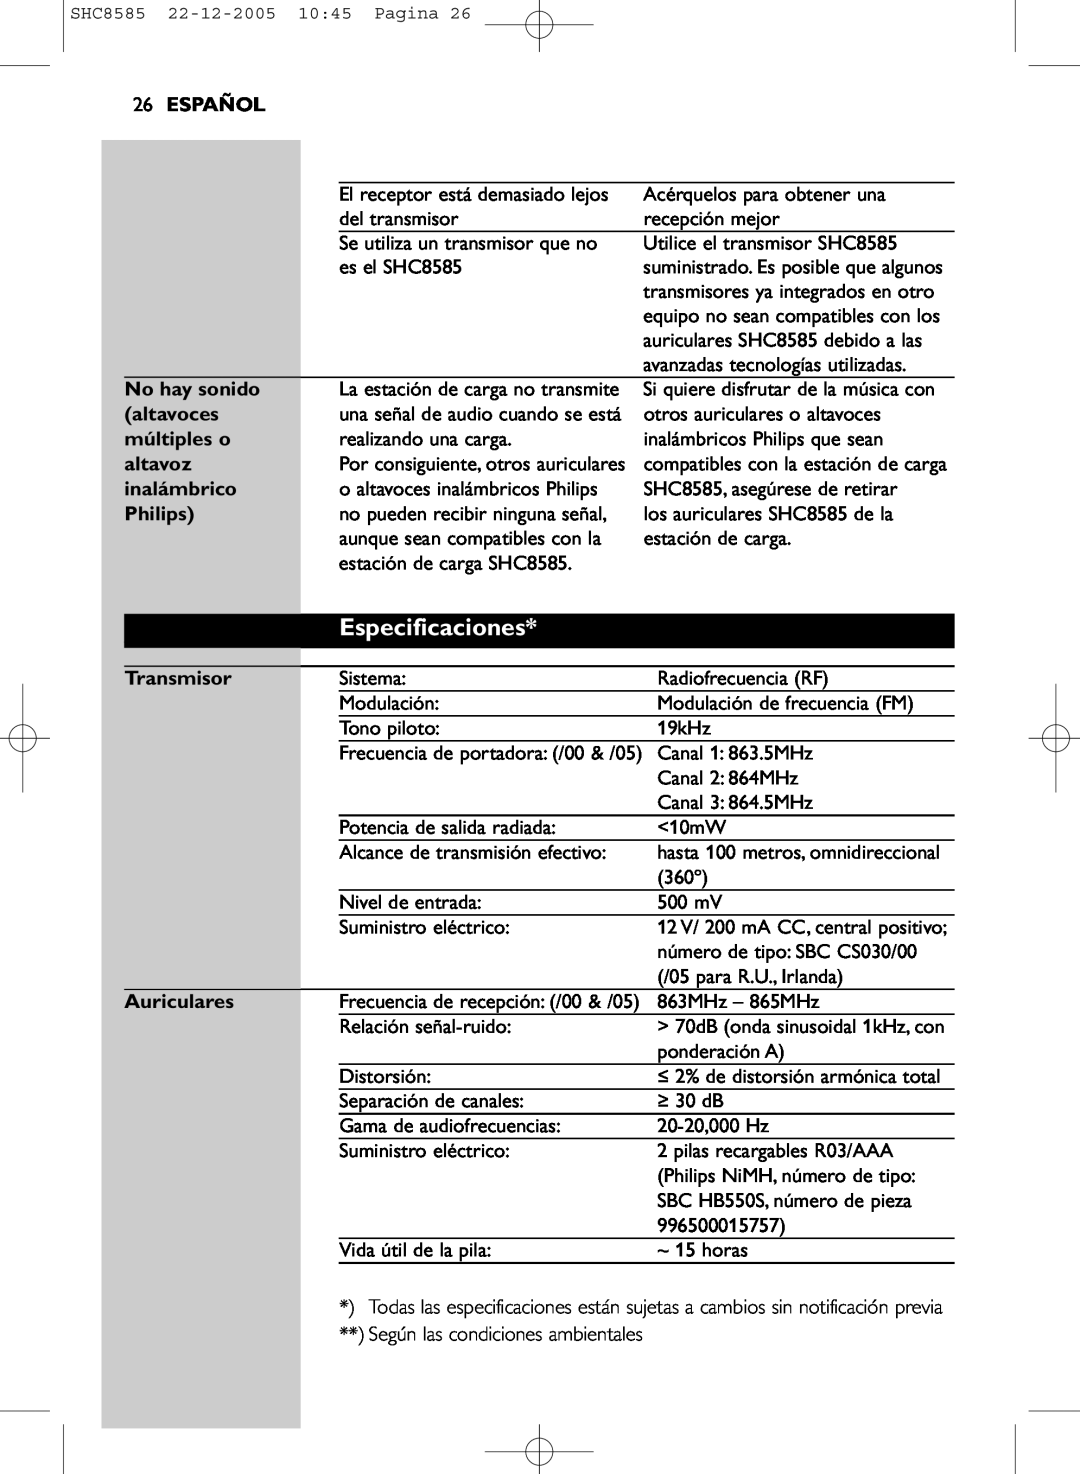 Philips SHC8585/05 manual Especificaciones, 26ESPAÑOL, No hay sonido, altavoces, múltiples o, altavoz, inalámbrico, Philips 